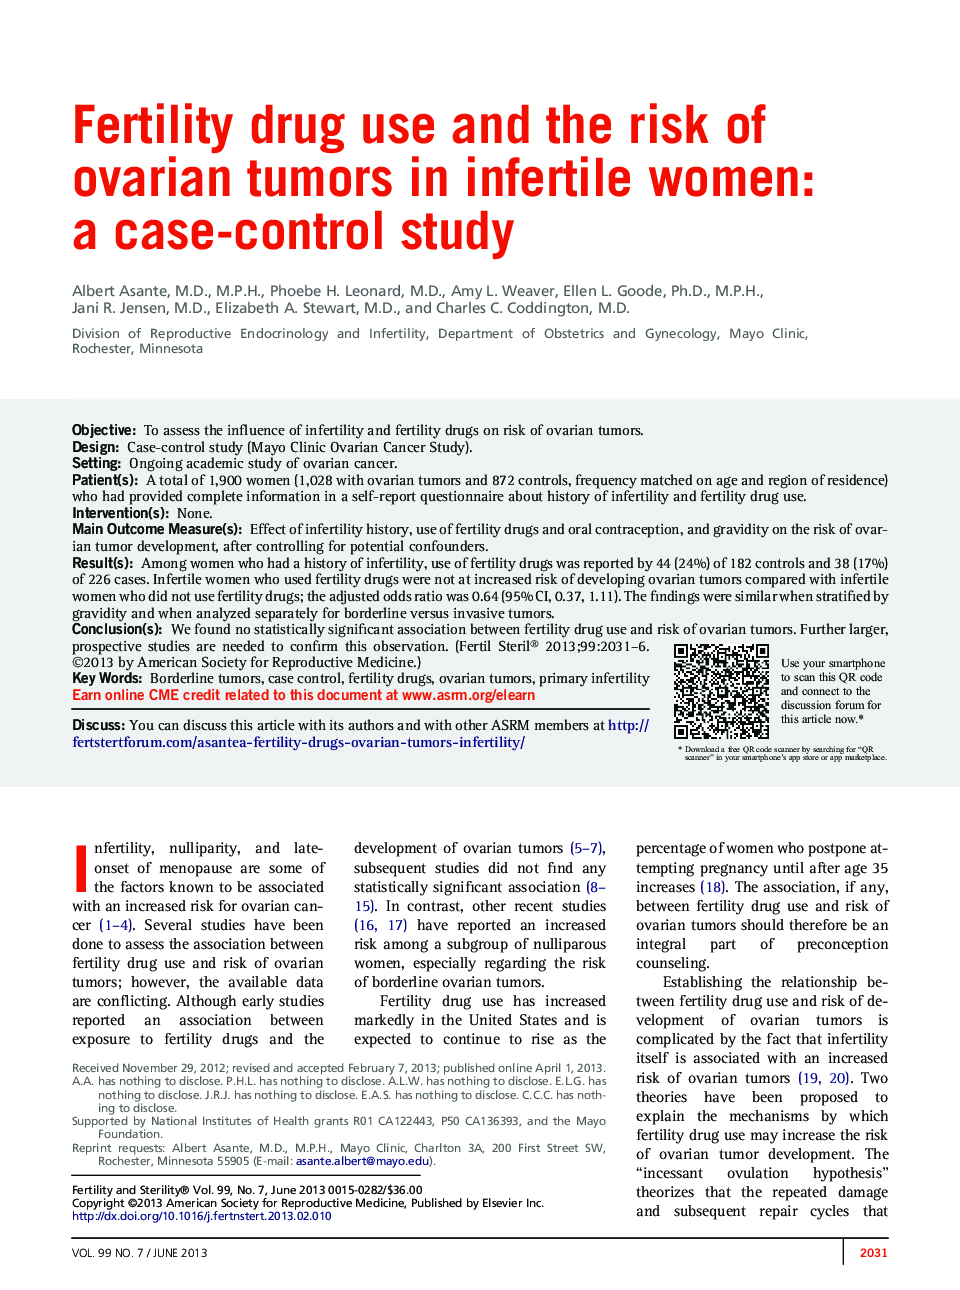 استفاده از باروری و خطر تومور تخمدان در زنان نابارور: یک مطالعه مورد-شاهدی 